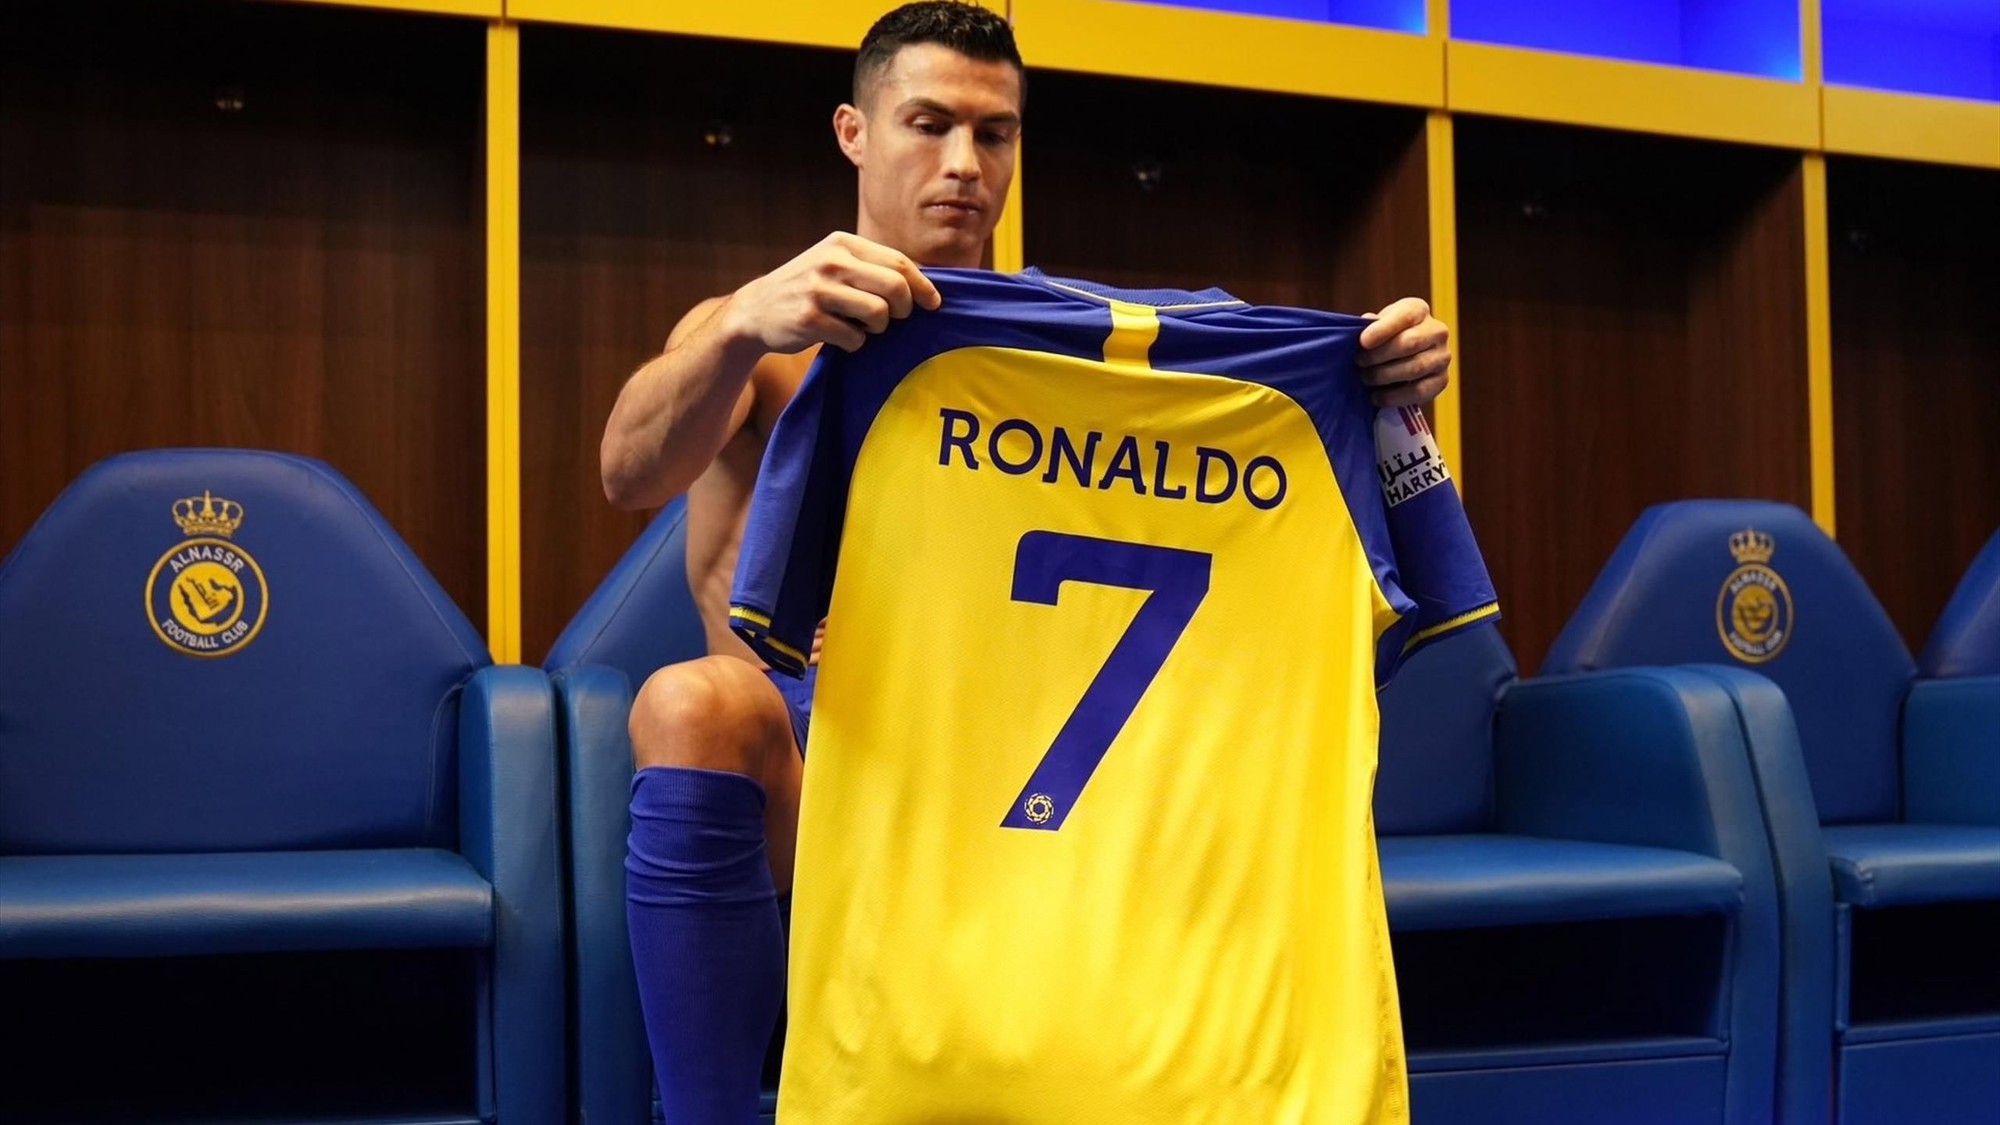 Ronaldo kiếm được bao nhiêu tiền kể từ khi đến Saudi Arabia? - Ảnh 1.